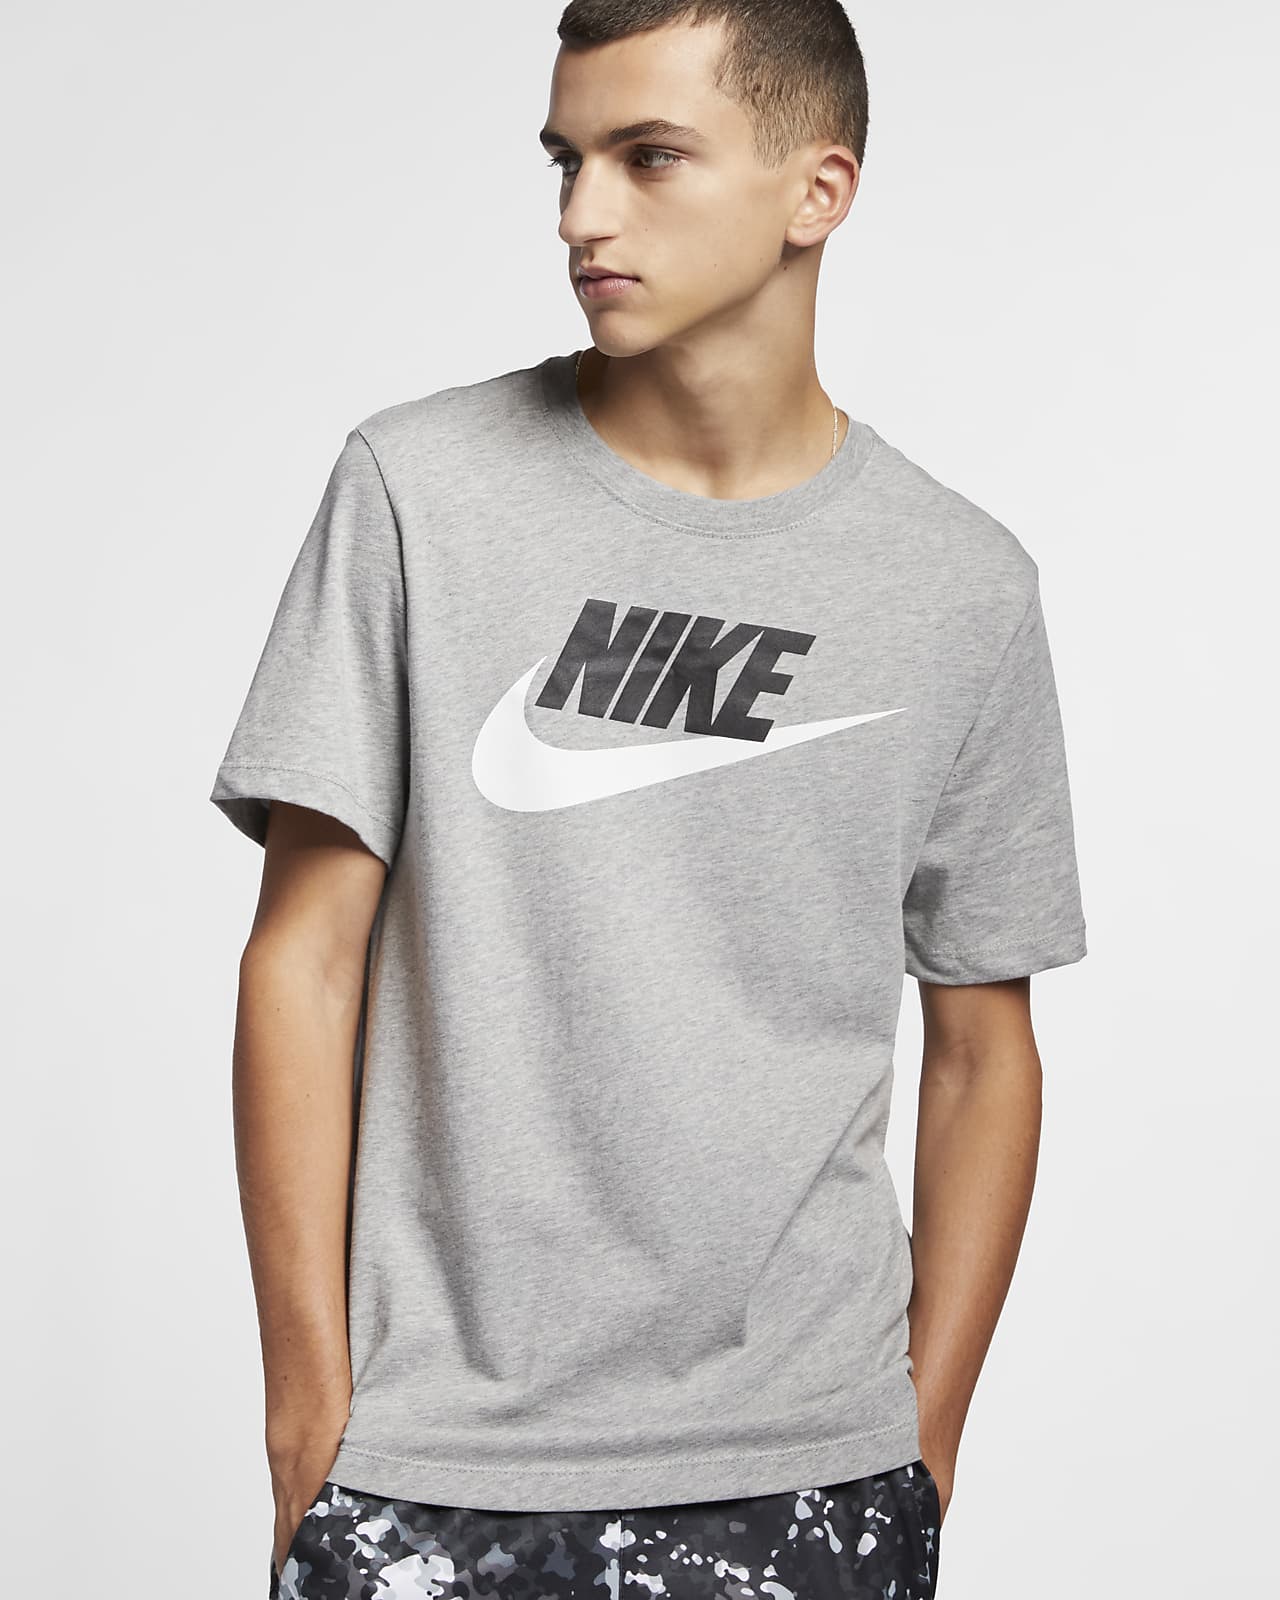 veronderstellen Snor marionet Nike Sportswear Herren-T-Shirt. Nike DE